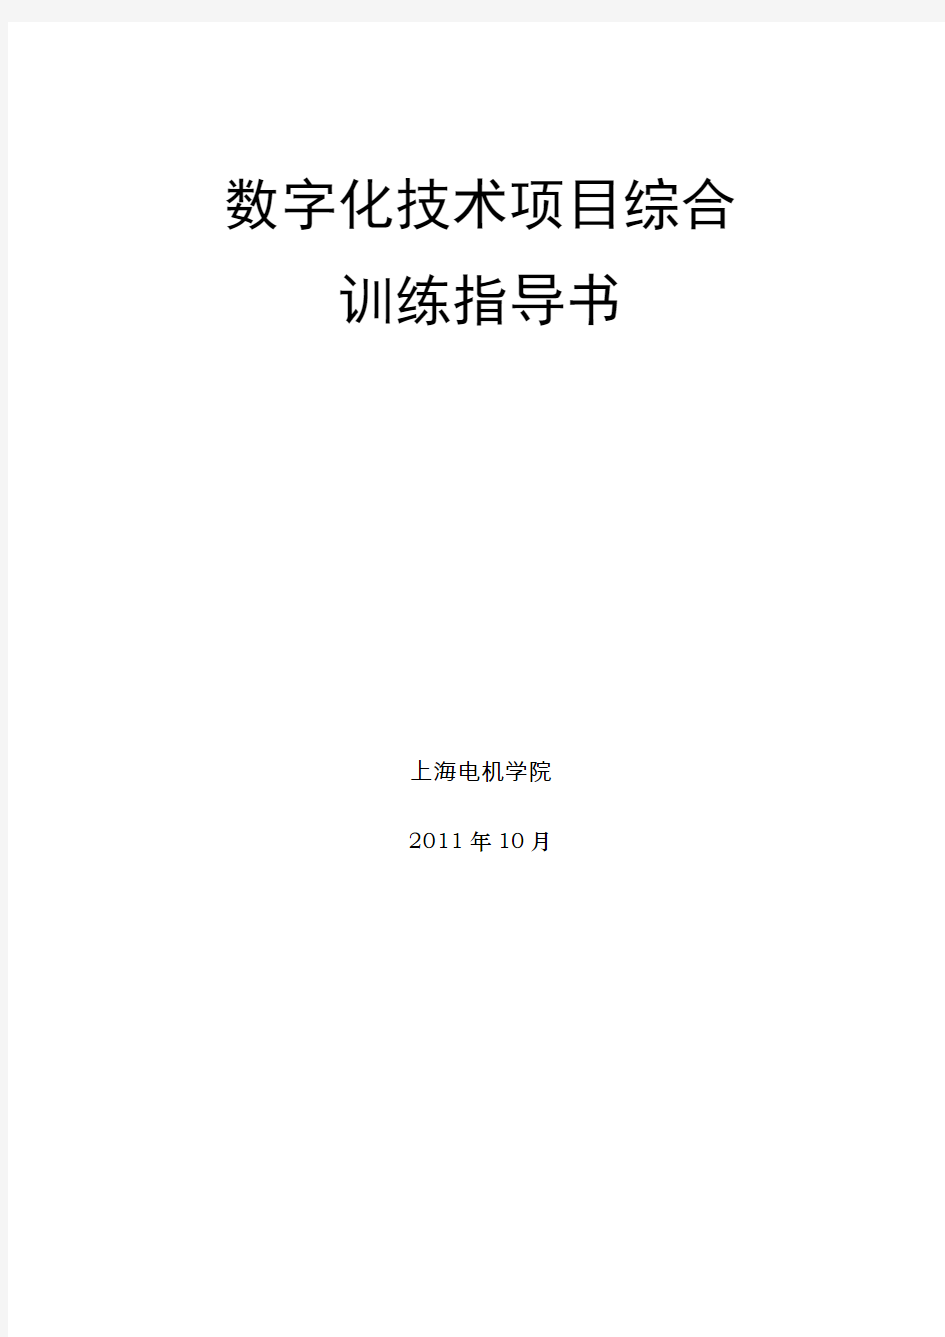 上海电机学院数字化技术项目训练指导书